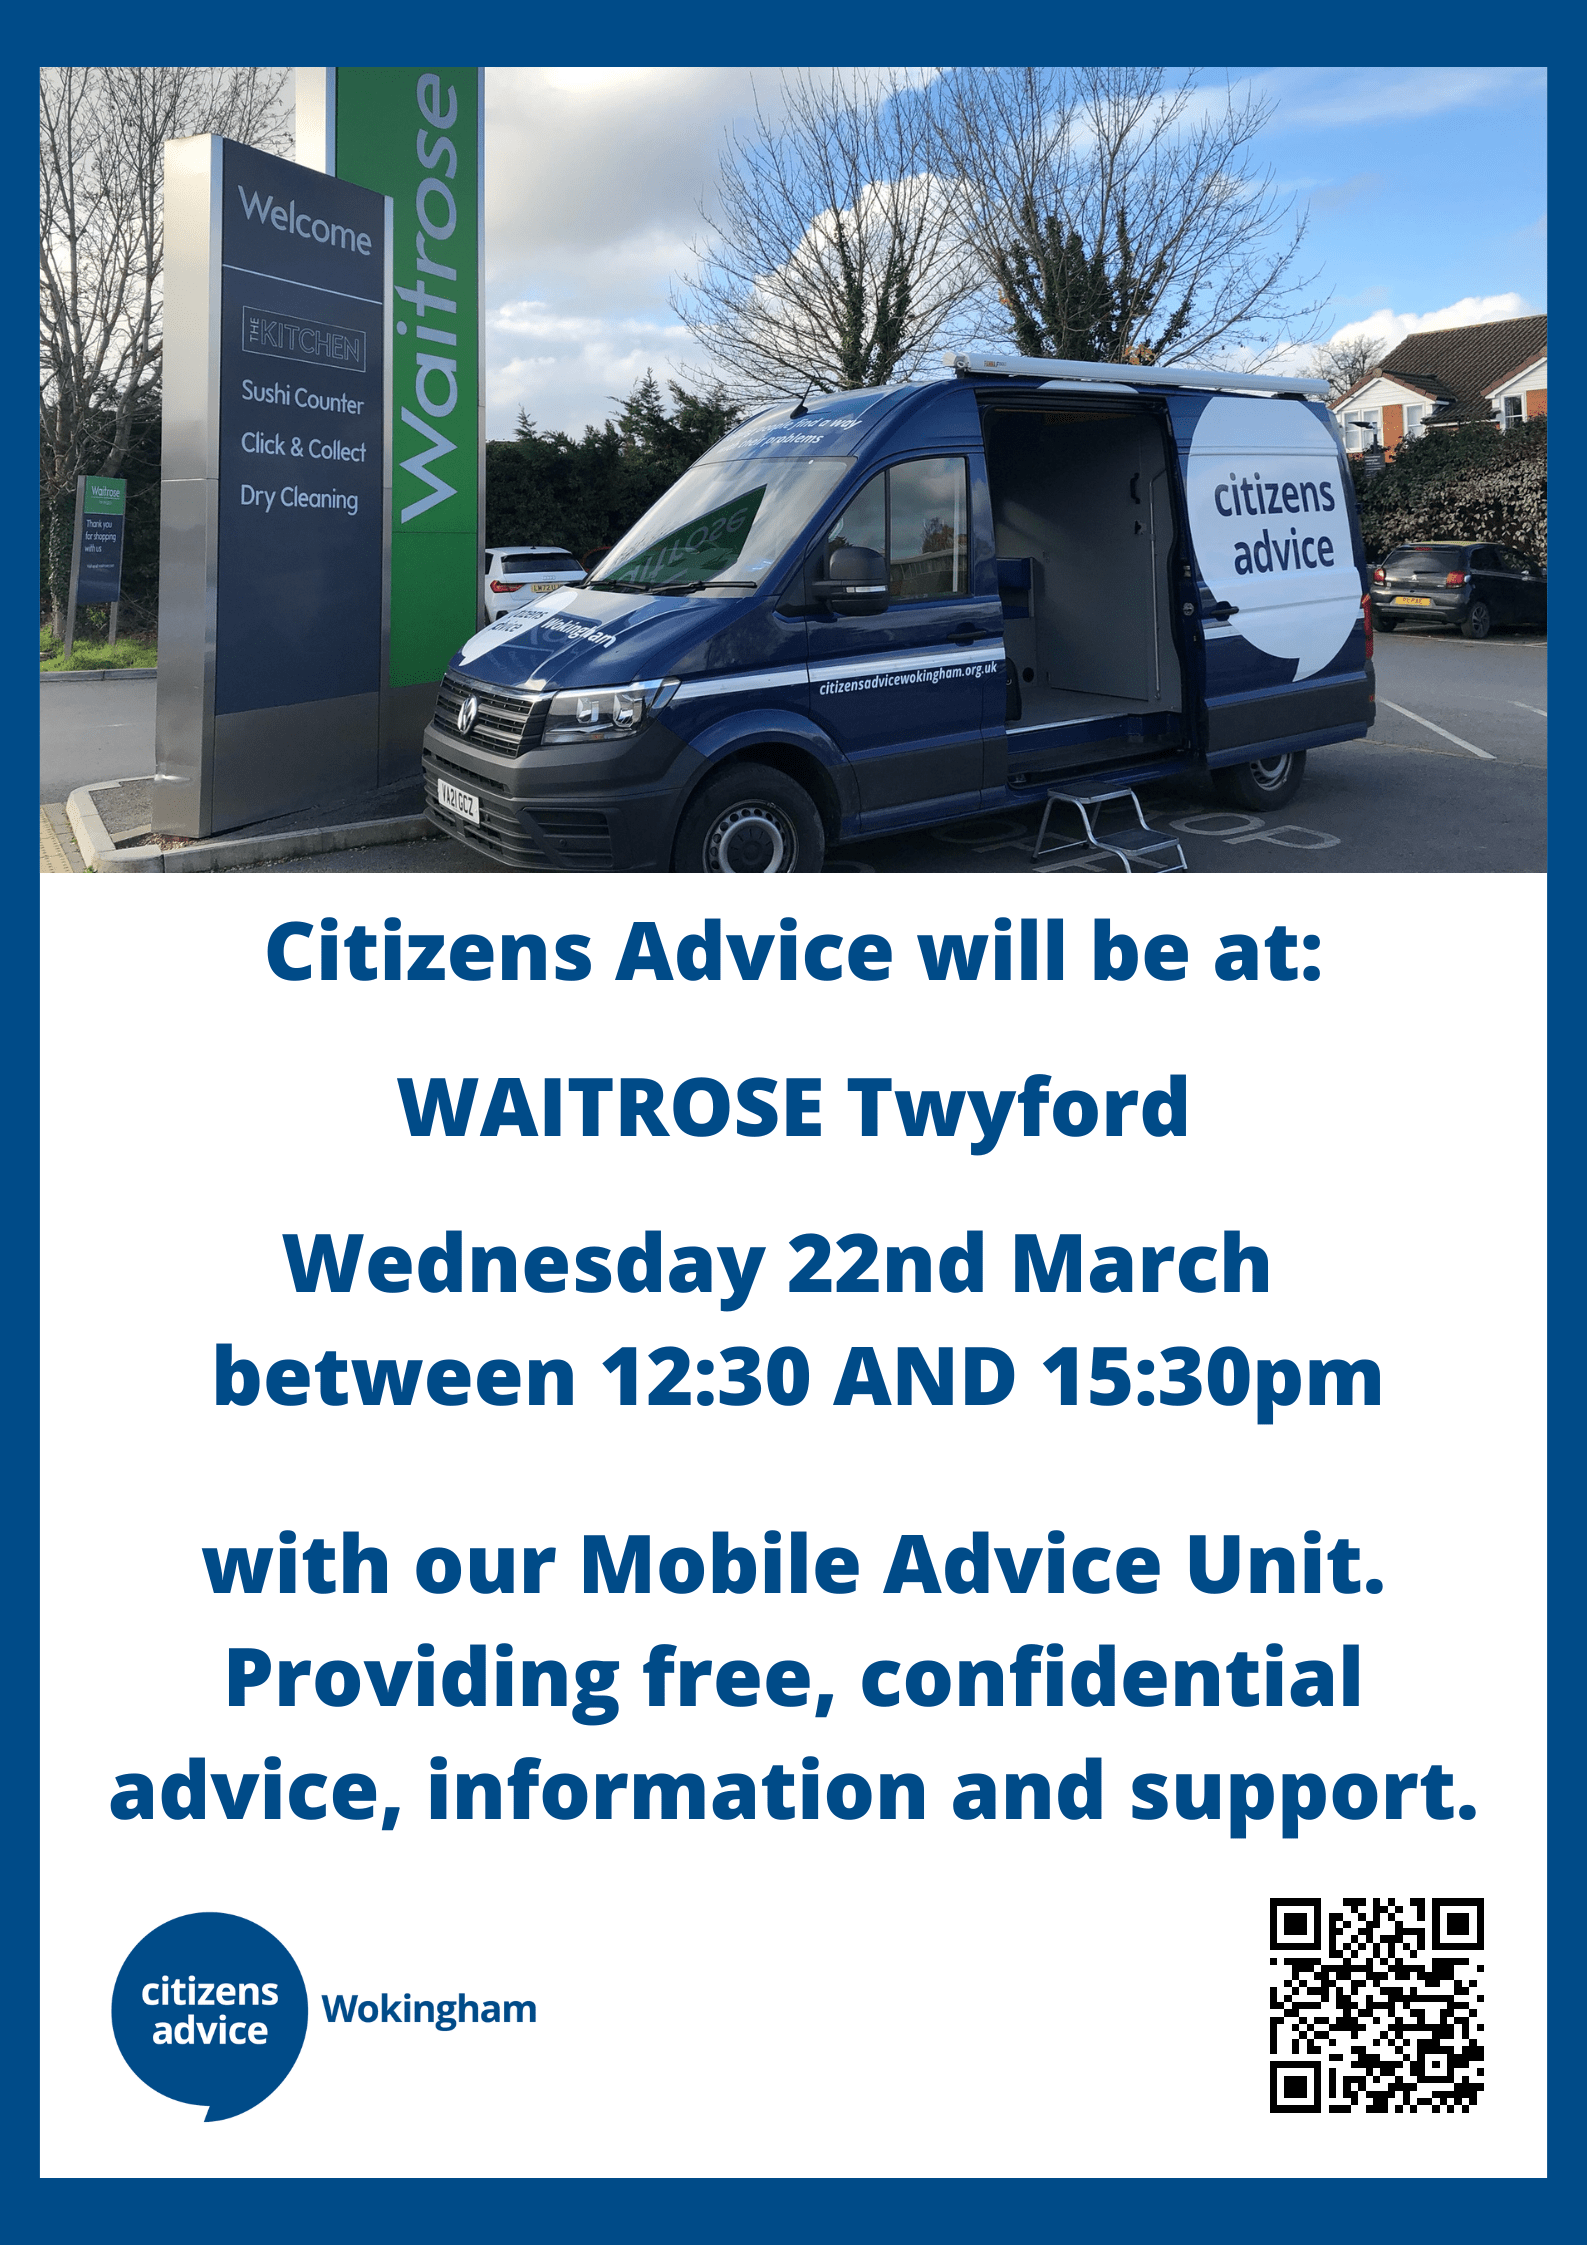 Citizens Advice mobile unit